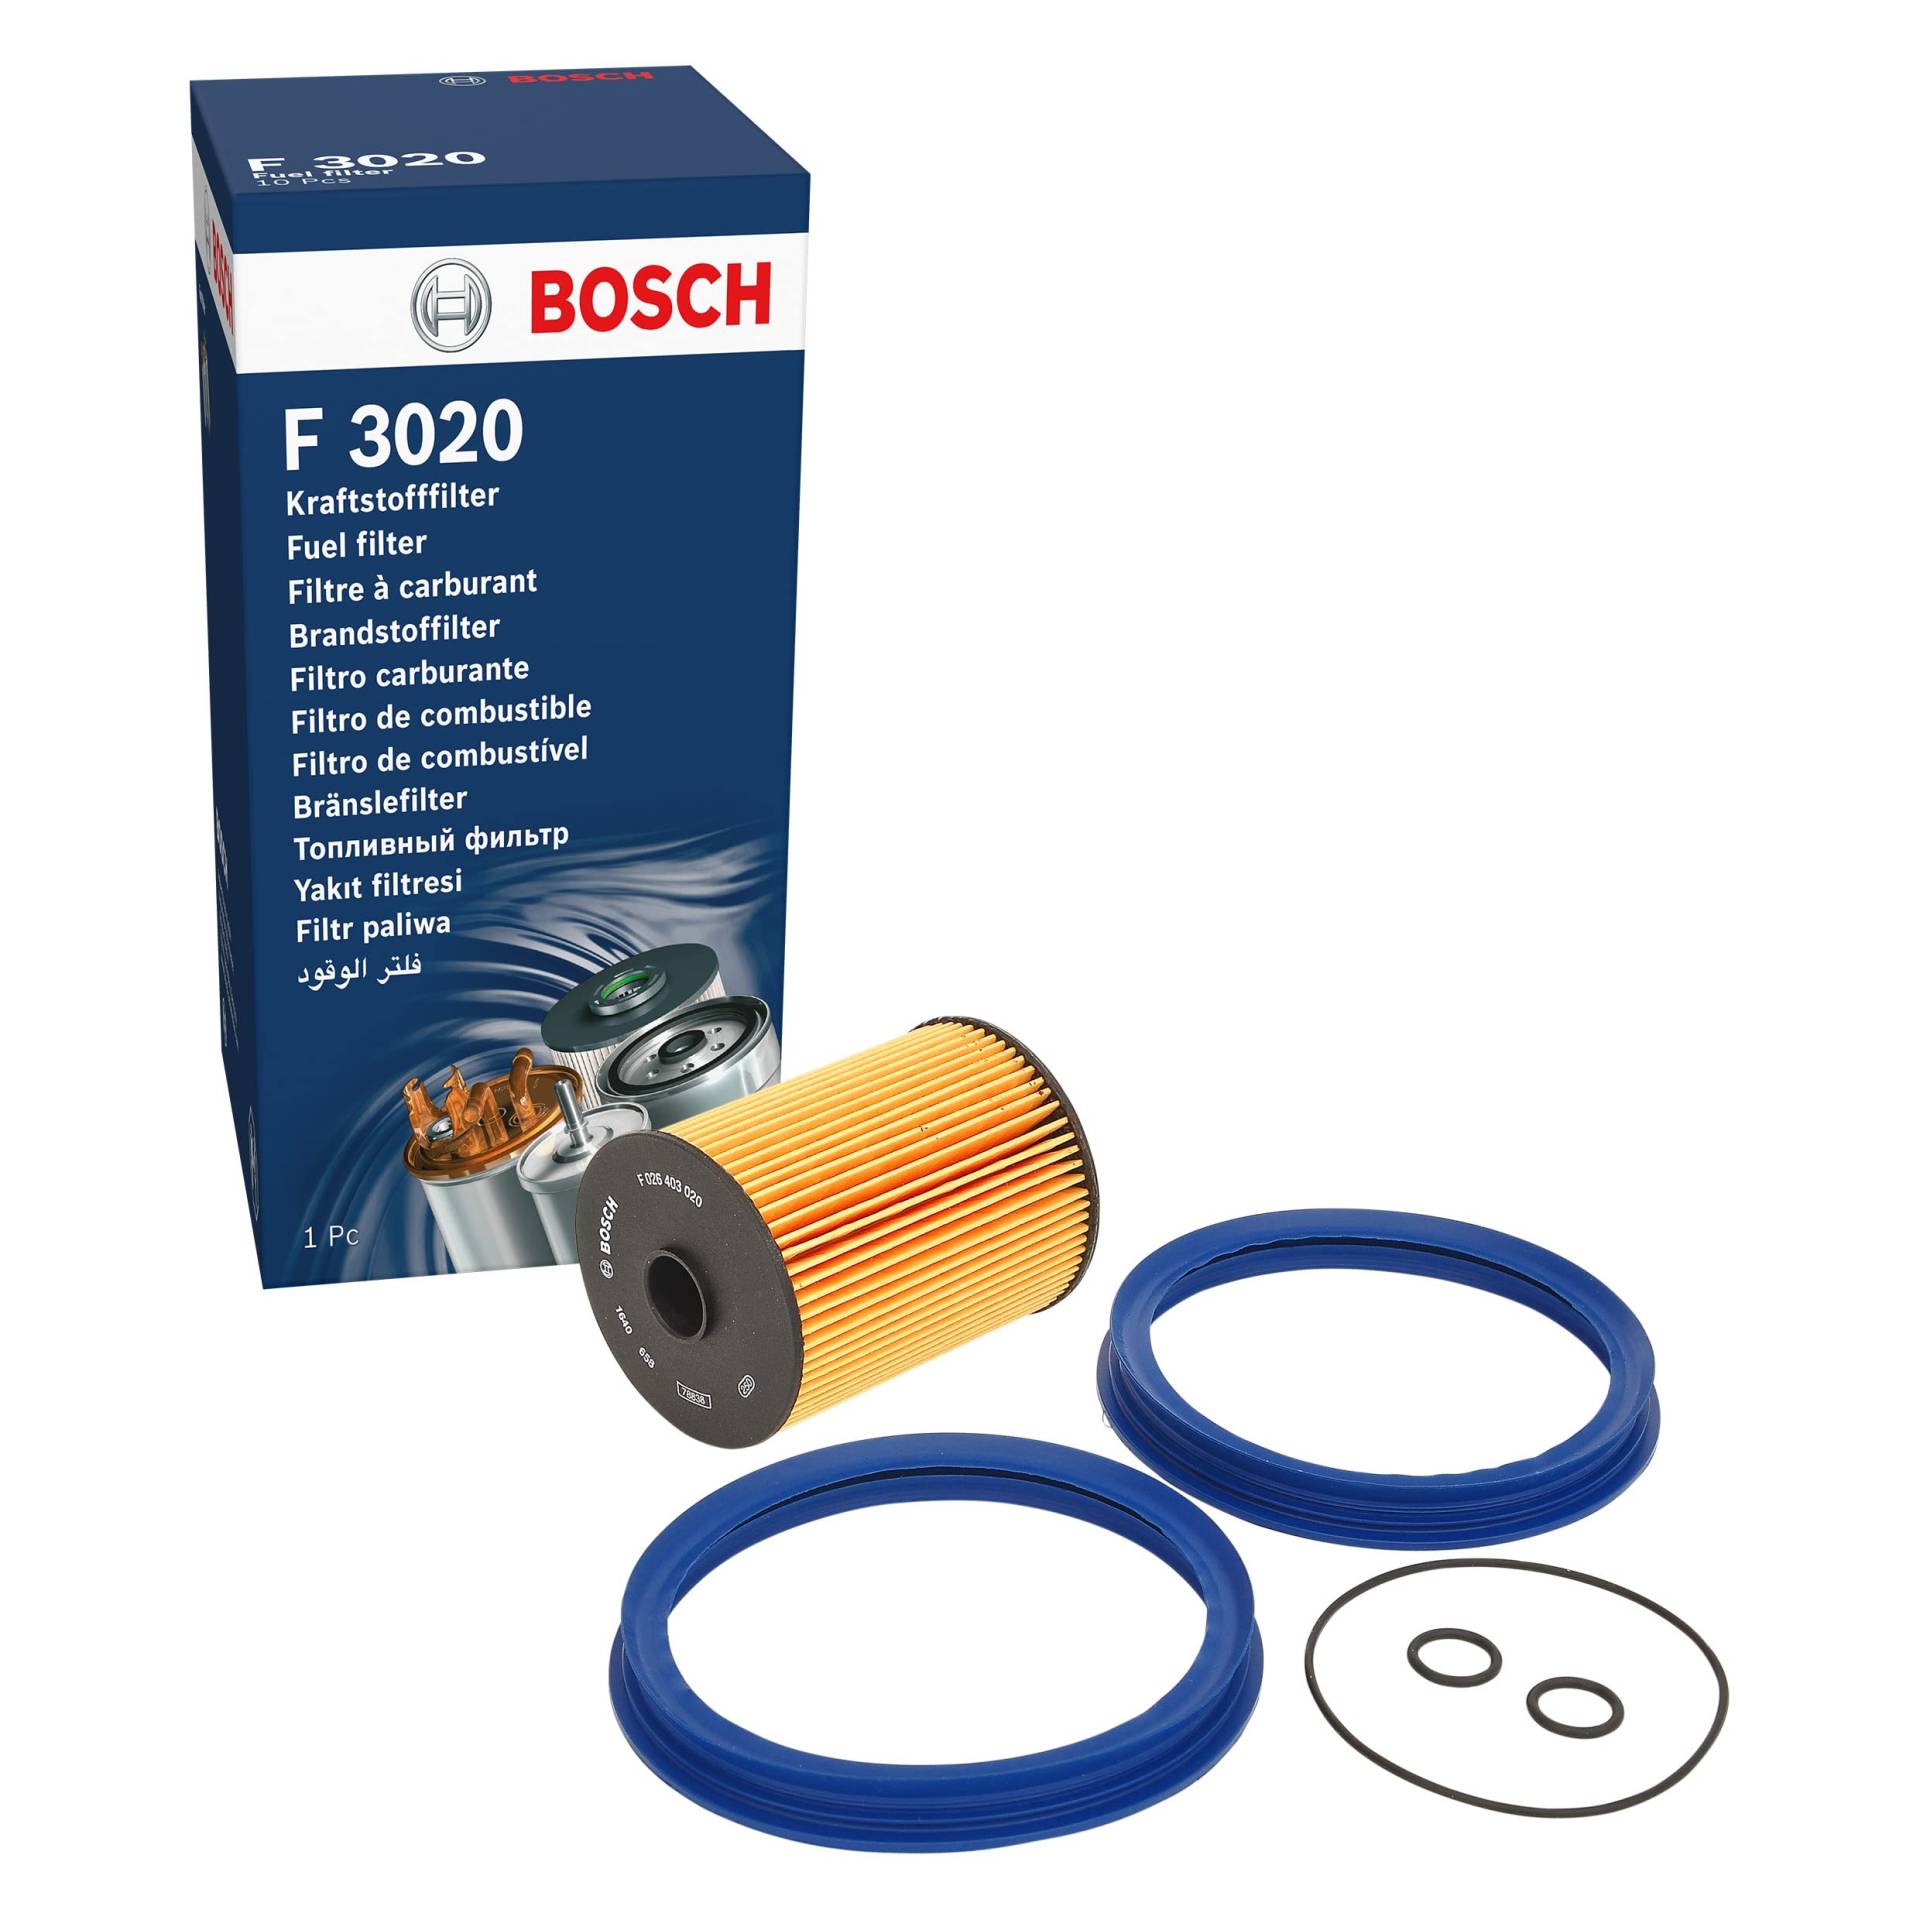 Bosch F3020 - Benzinfilter Auto von Bosch Automotive